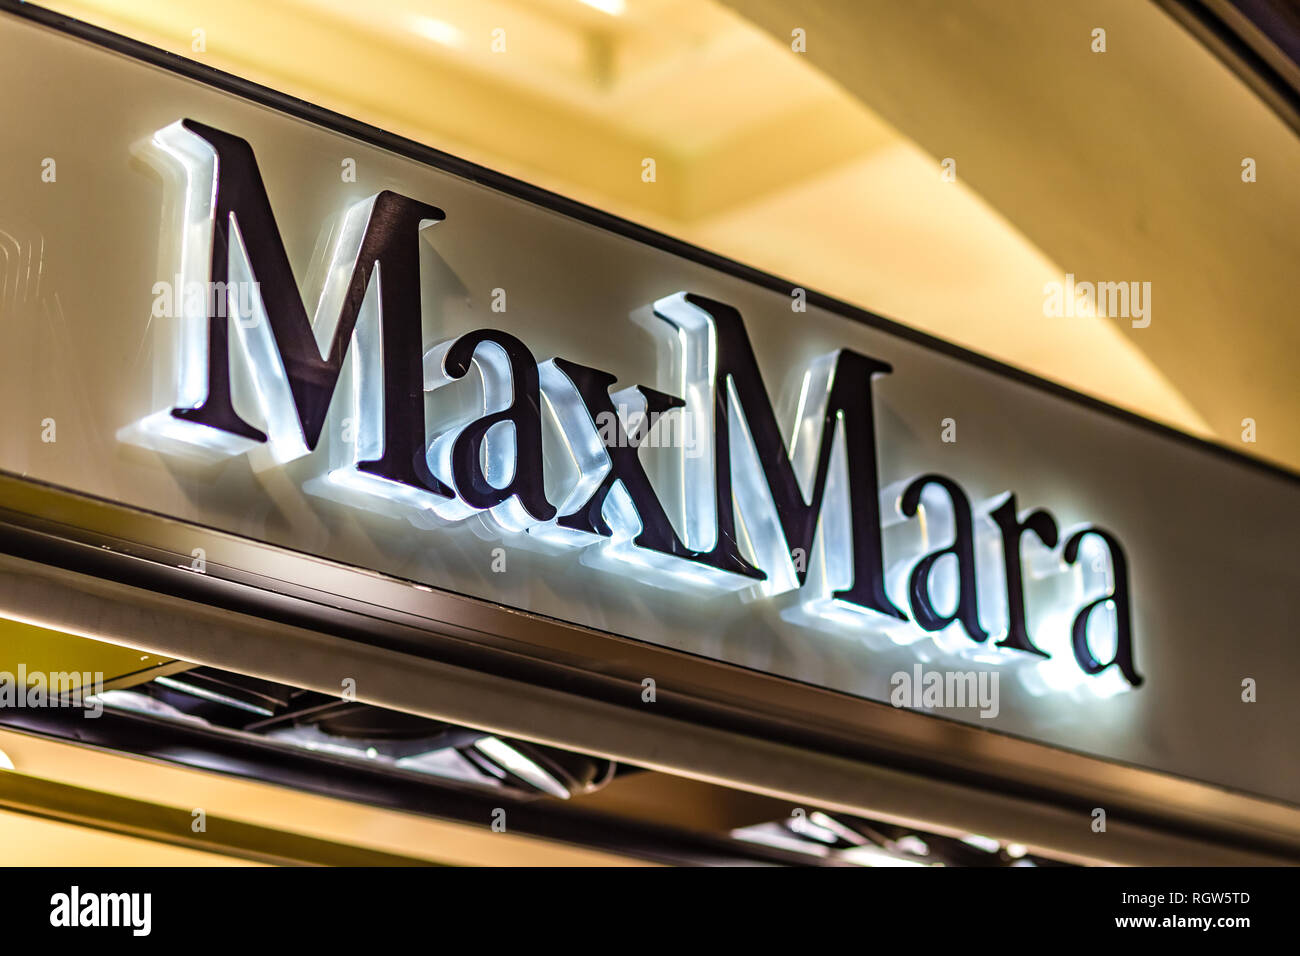 RAVENNA, ITALIE - Le 17 janvier 2019 : lumières sont éclairantes MaxMara logo sur storefront Banque D'Images